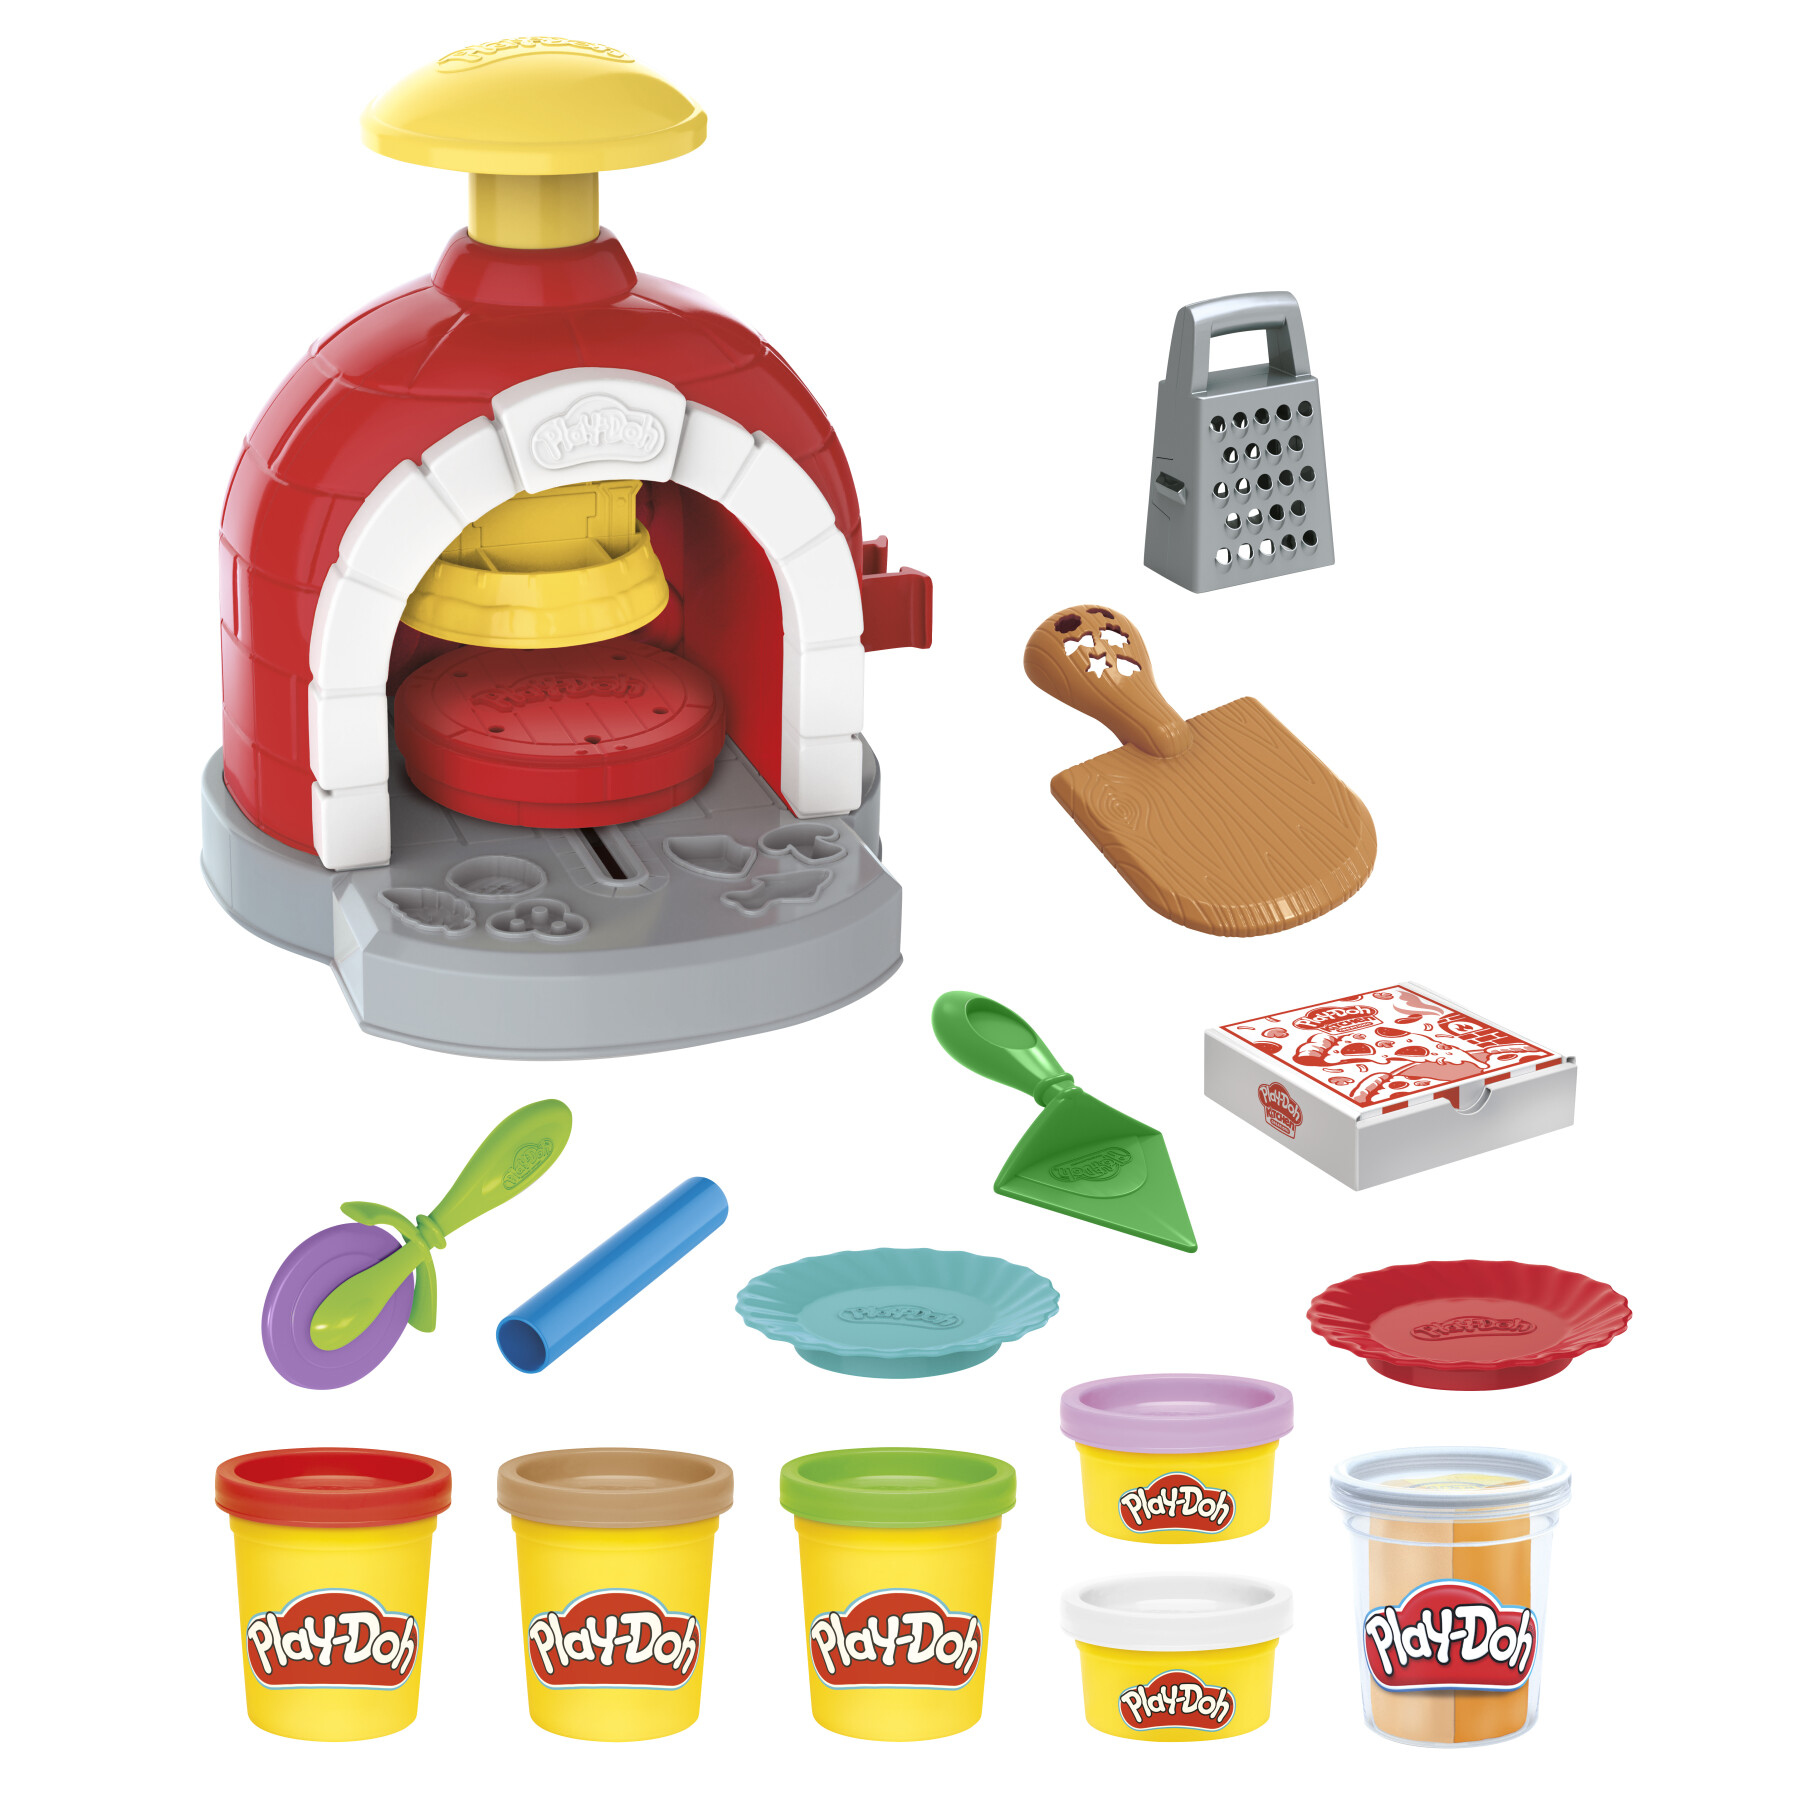 Play-doh kitchen creations, la pizzeria, playset con 6 vasetti di pasta modellabile e 8 accessori - PLAY-DOH